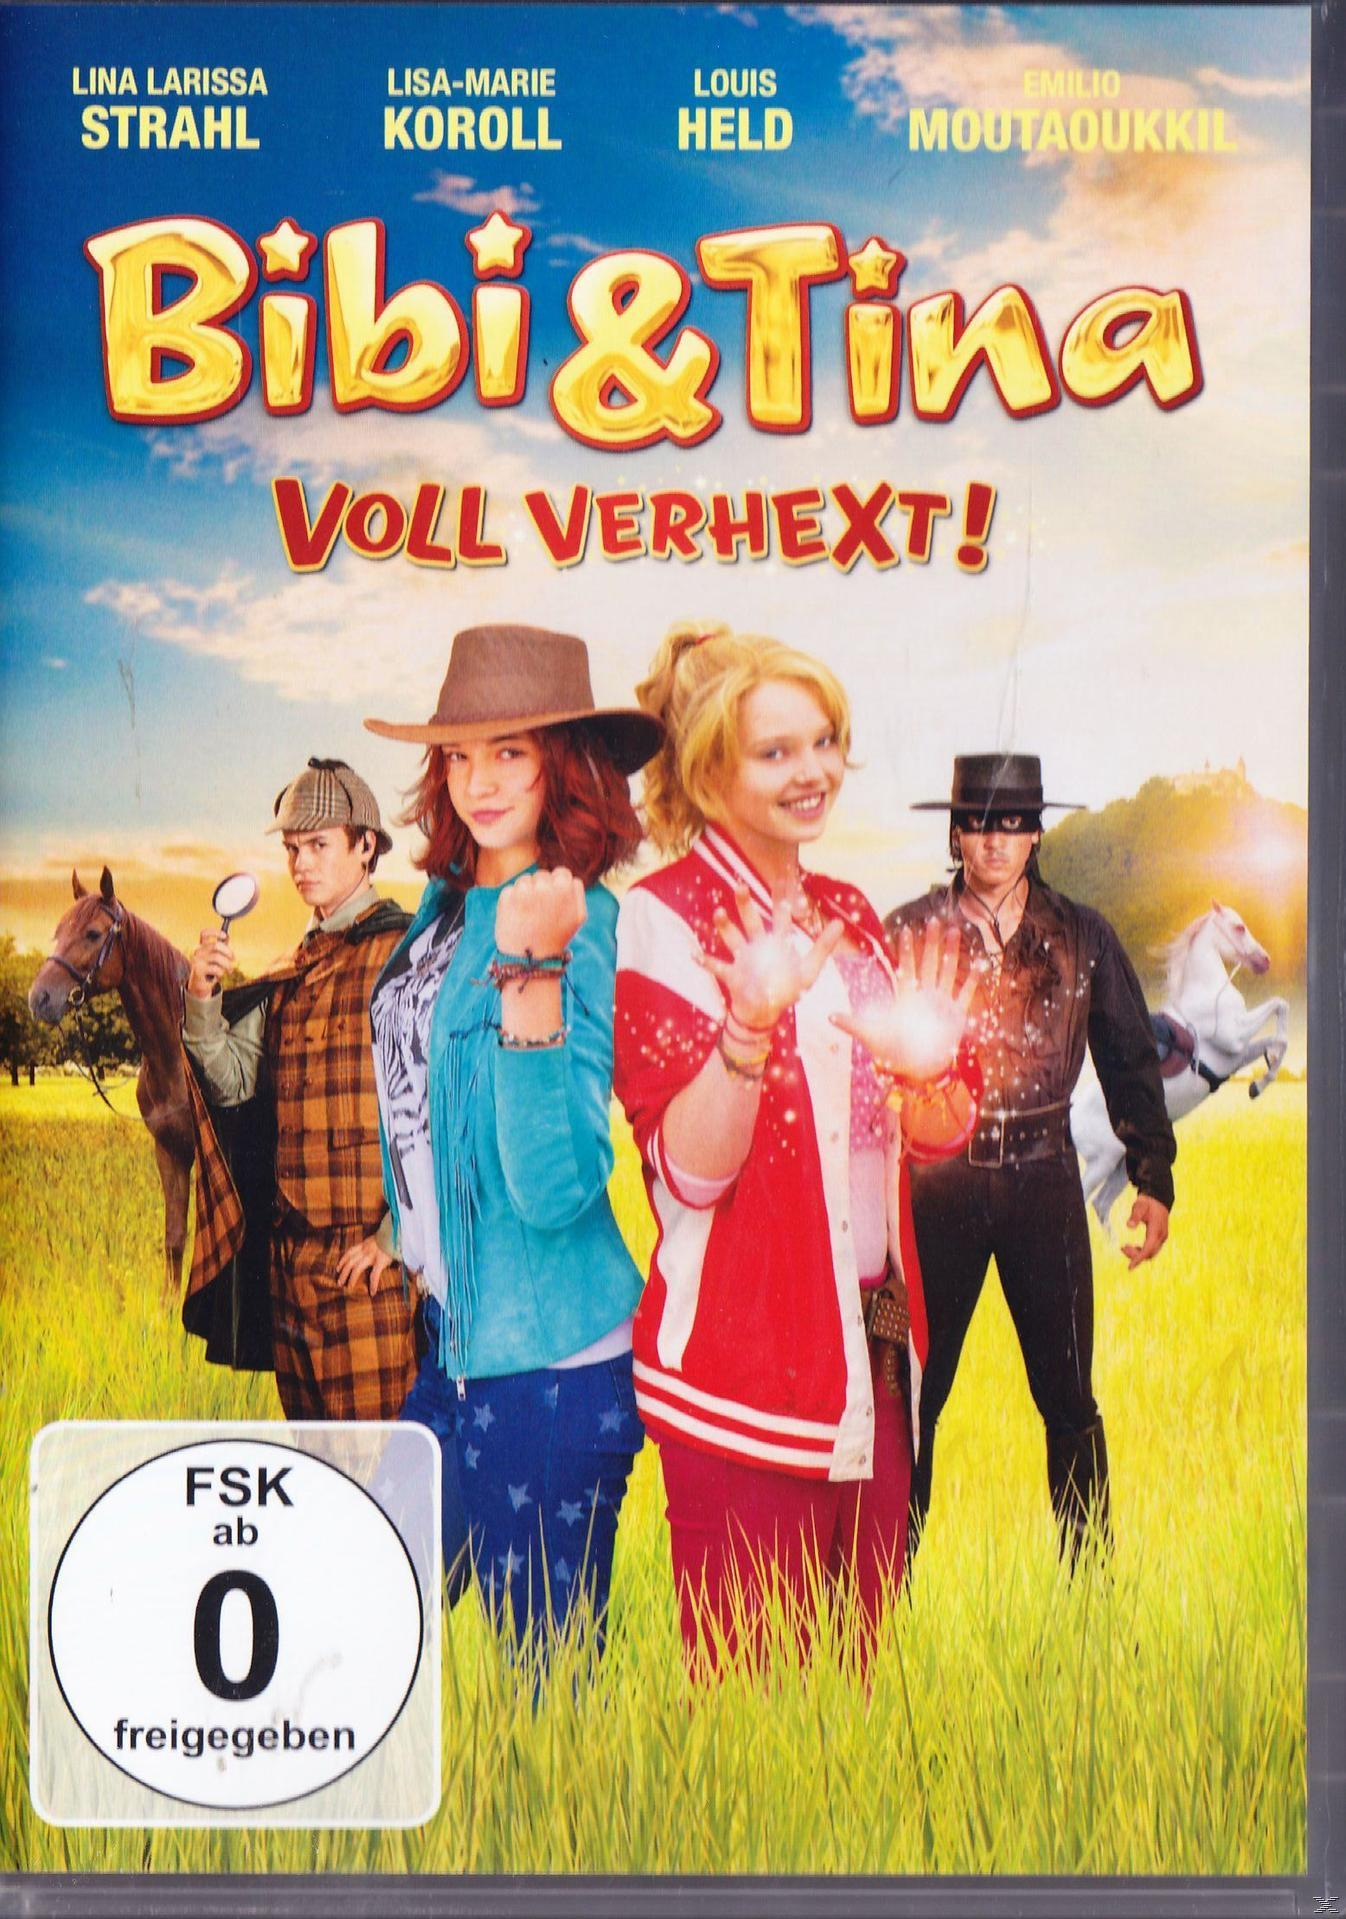 Tina Bibi & - DVD verhext! Voll